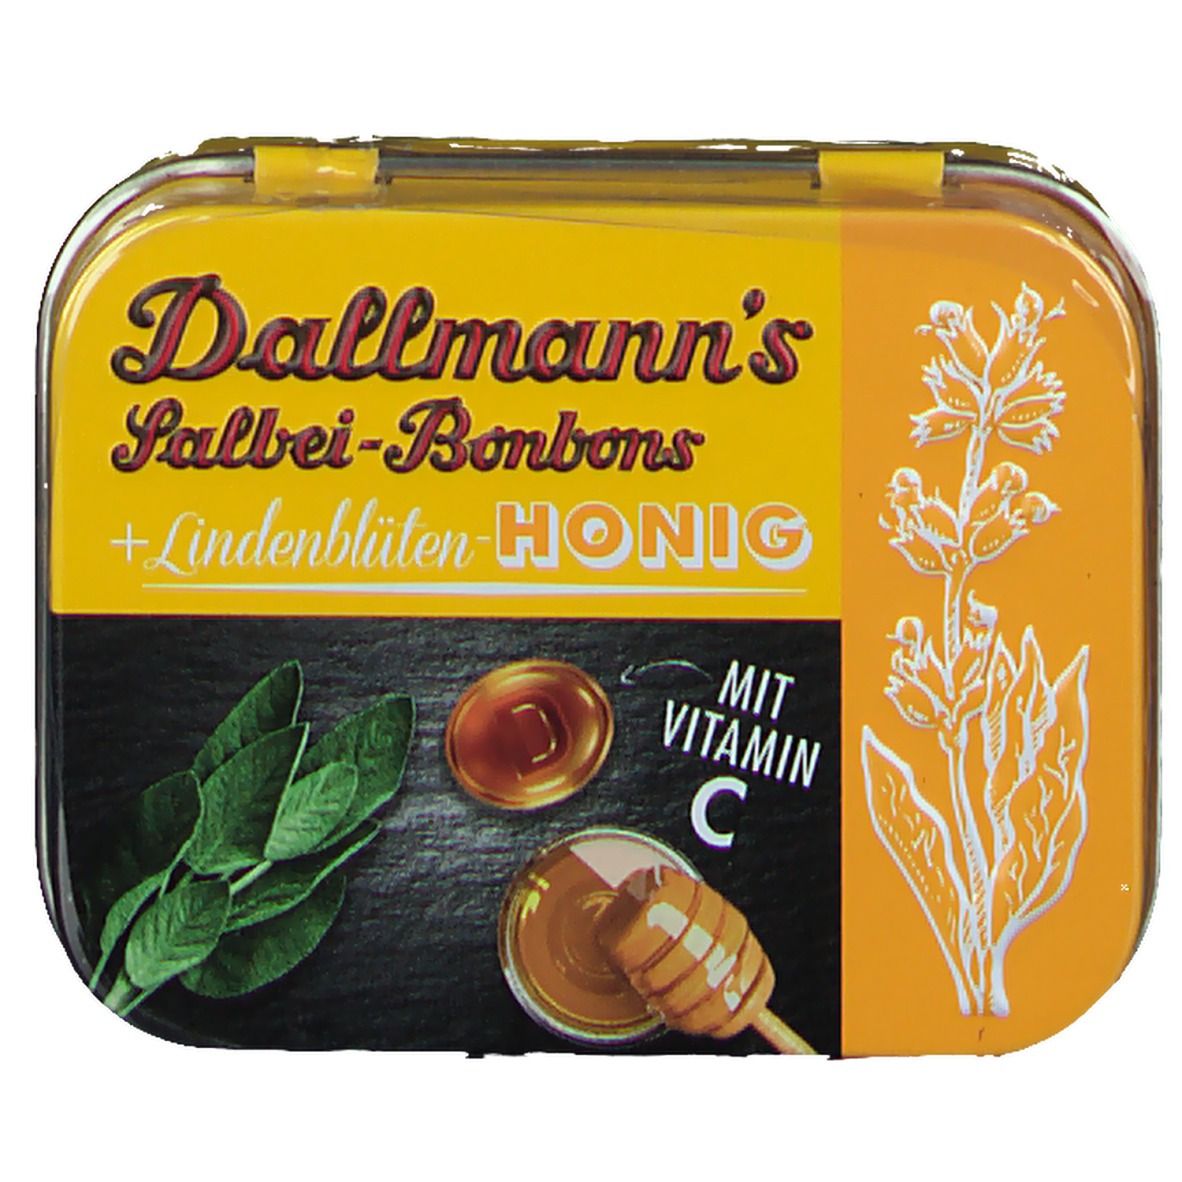 Dallmanns Salbei-Bonbons + Lindenblütenhonig